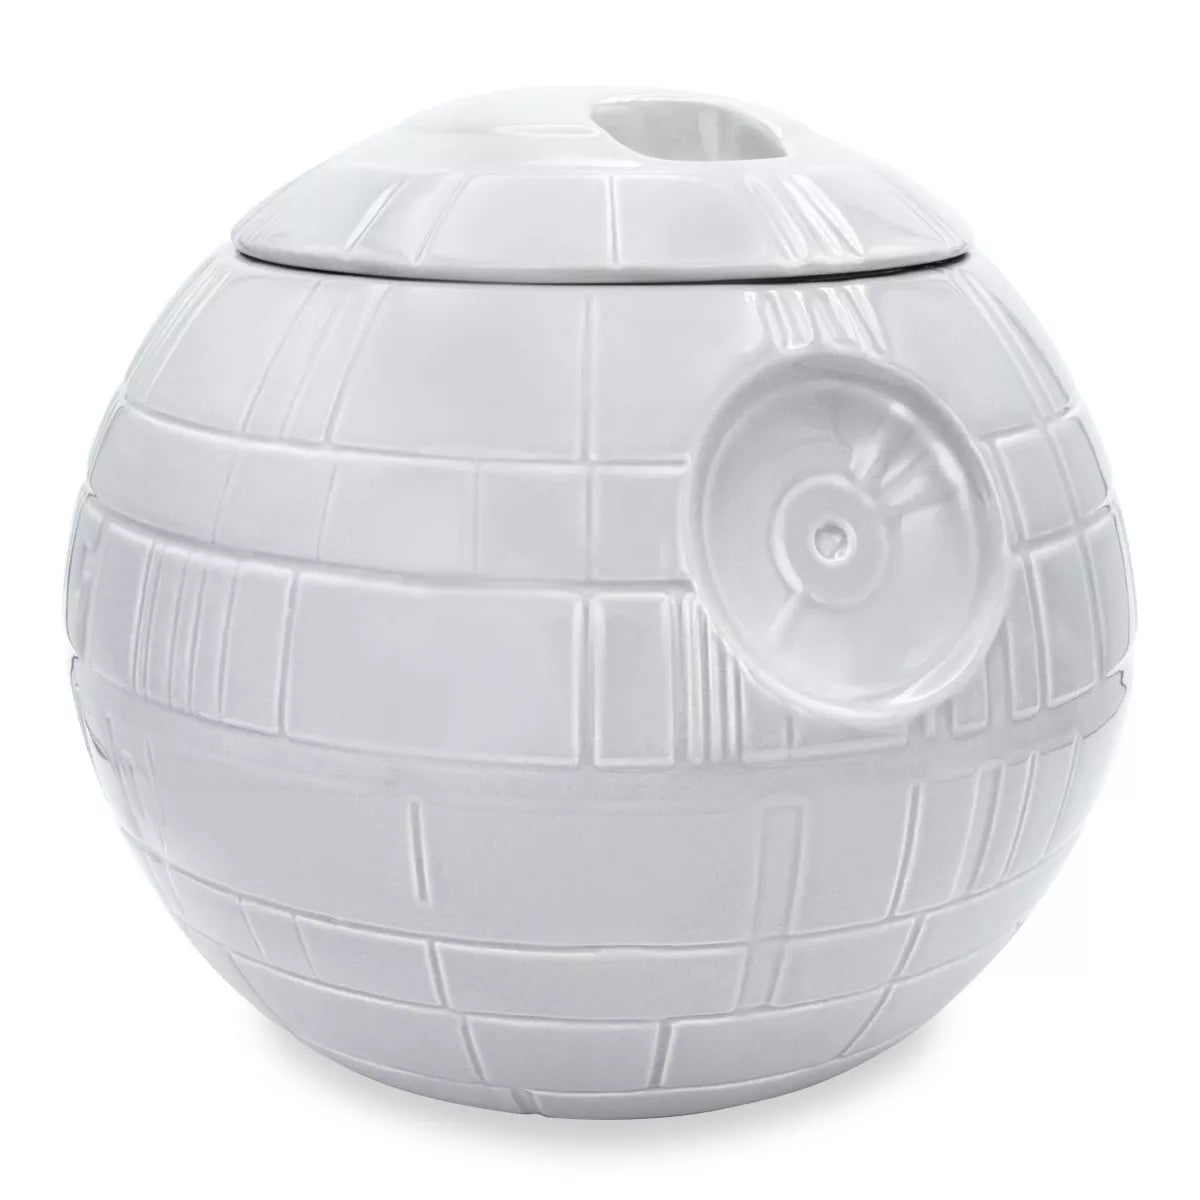 Star Wars Death Star Ceramic Cookie Jar